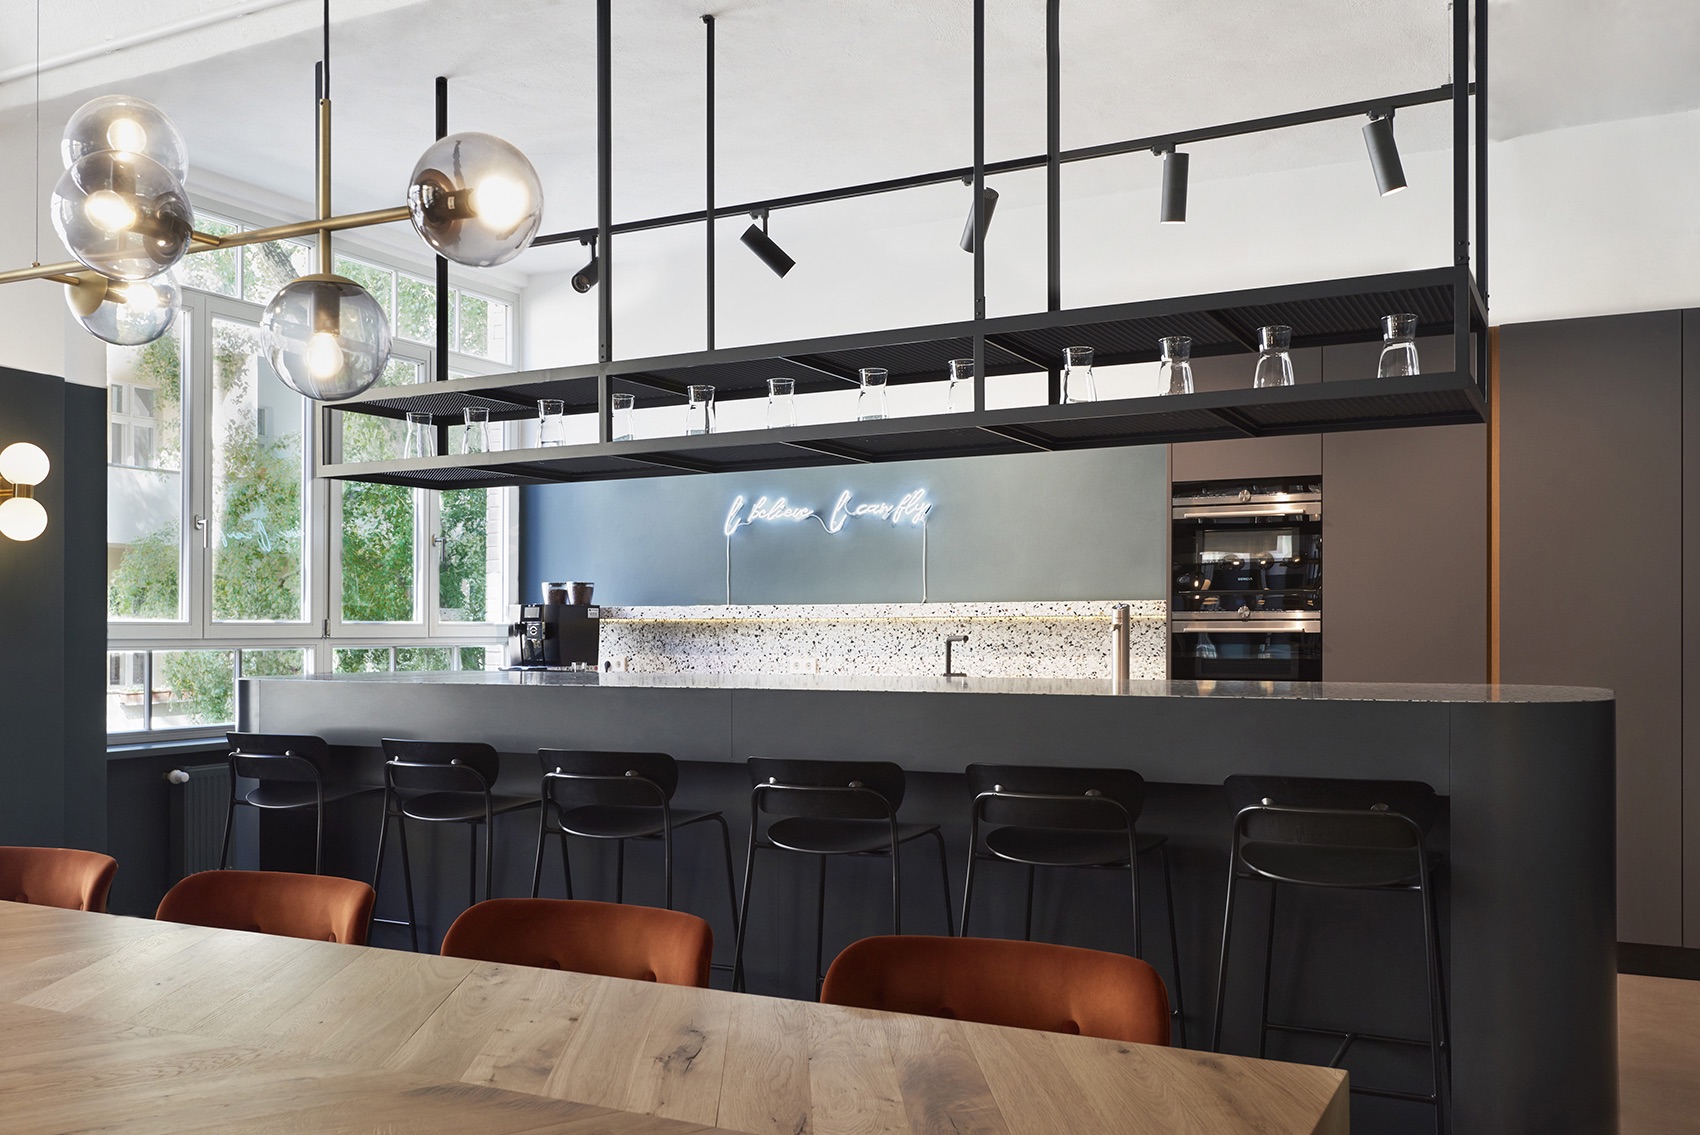 AirHelp Headquarters kitchen bar ©Fourrichon Architecture